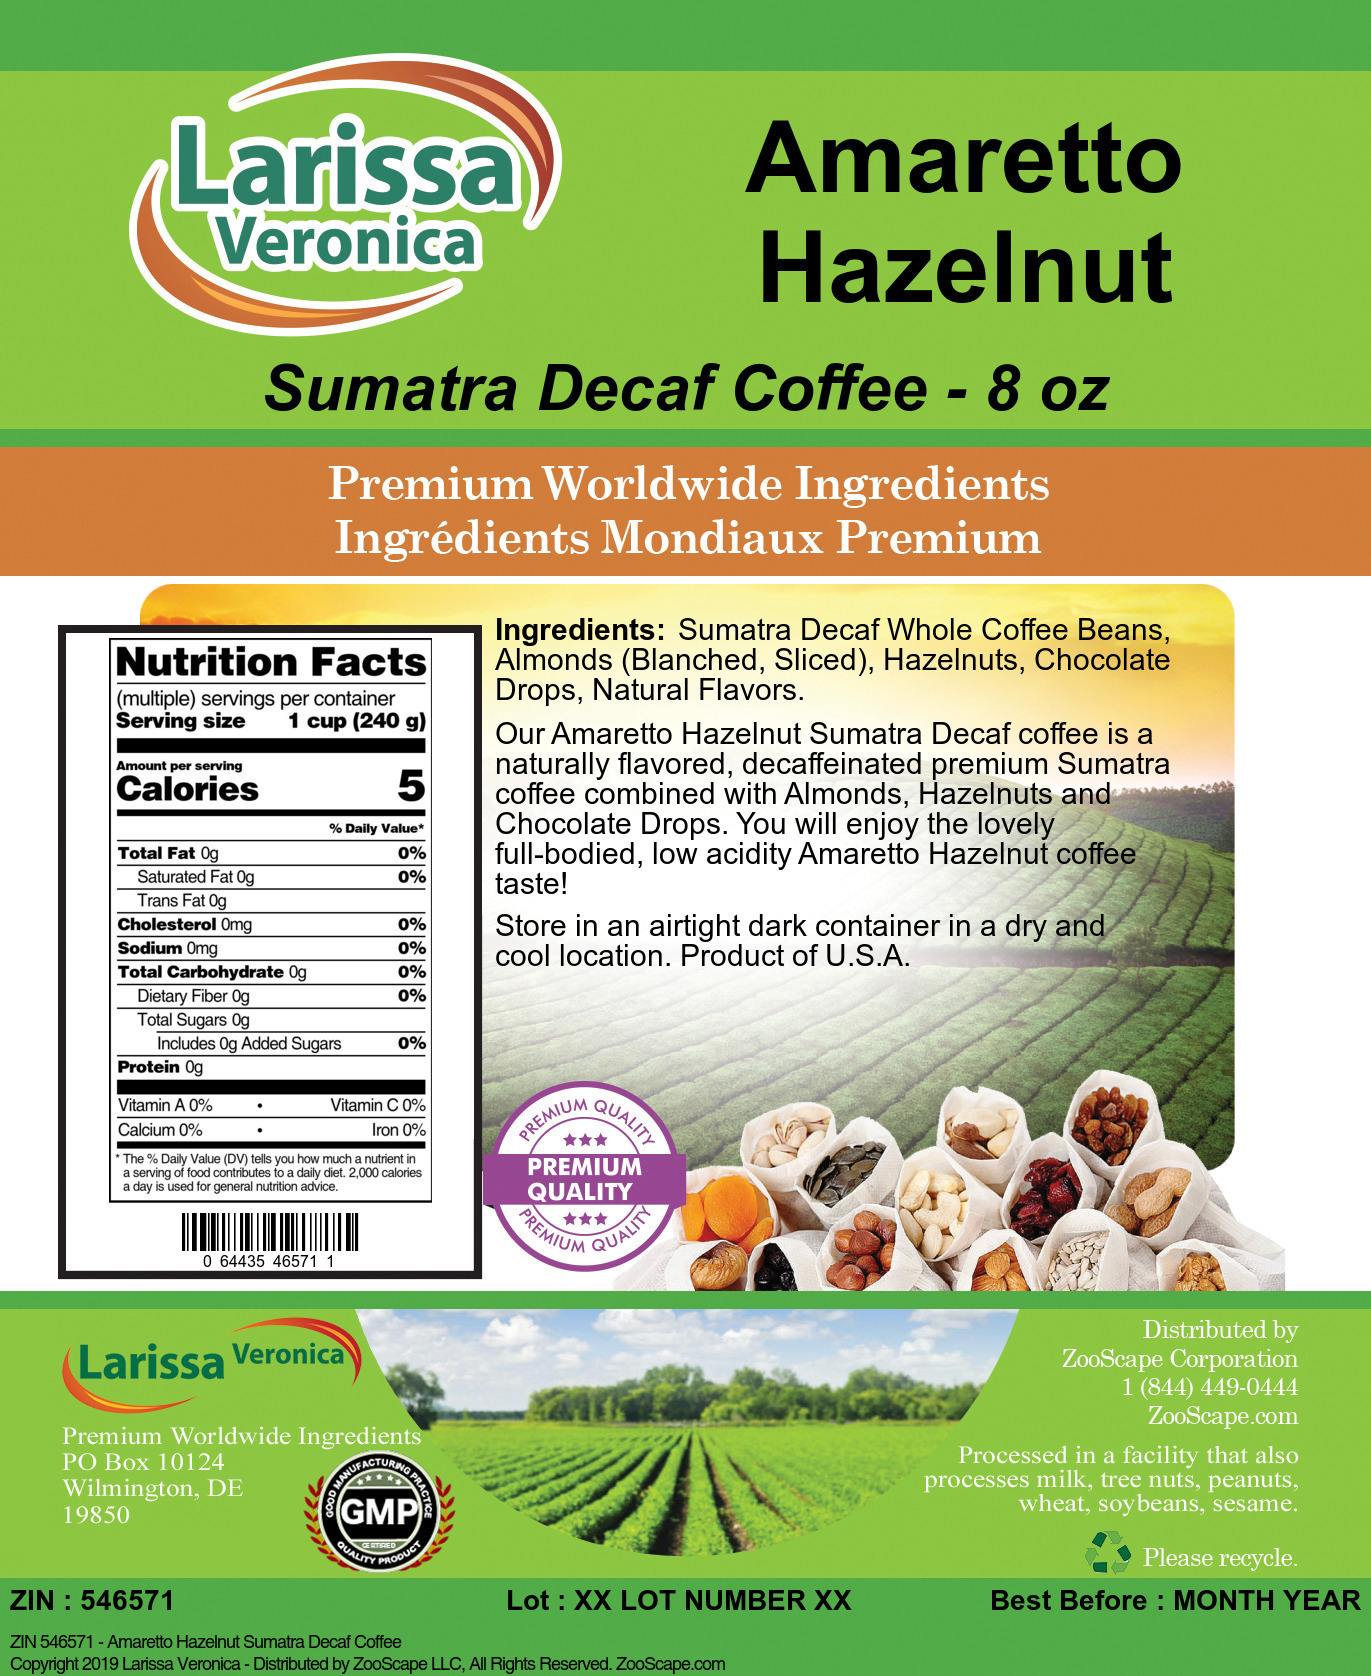 Amaretto Hazelnut Sumatra Decaf Coffee - Label